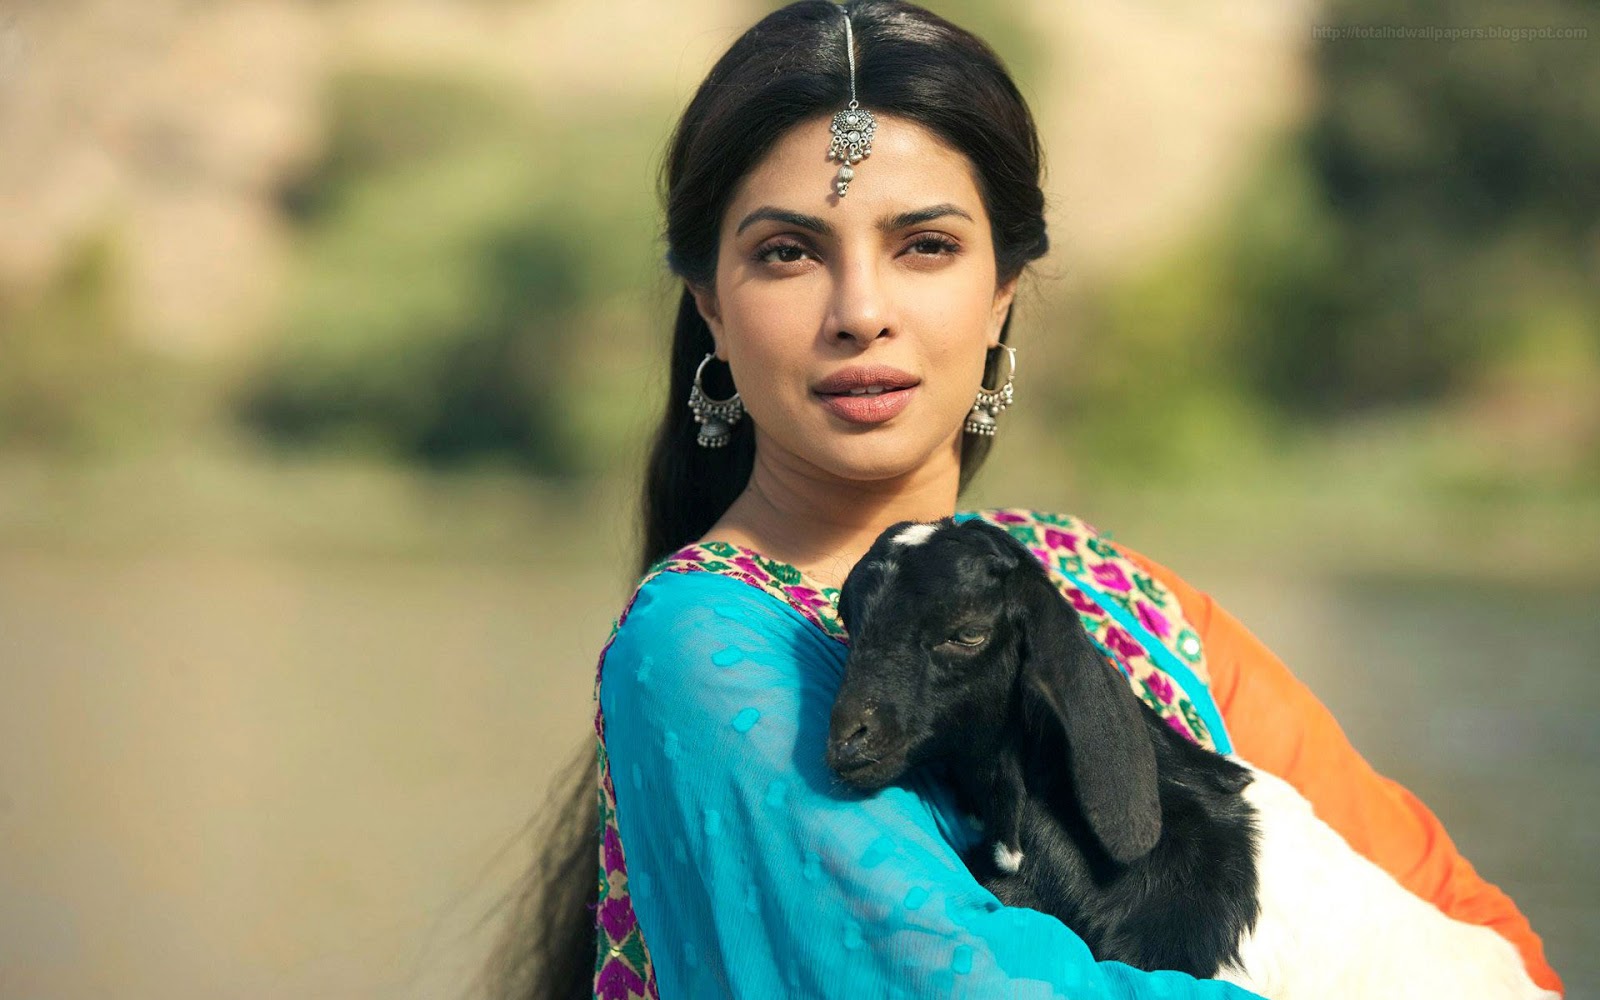 bollywood schauspielerin hd wallpaper 1080p,schwarzes haar,fotografie,sari,fotoshooting,kitz